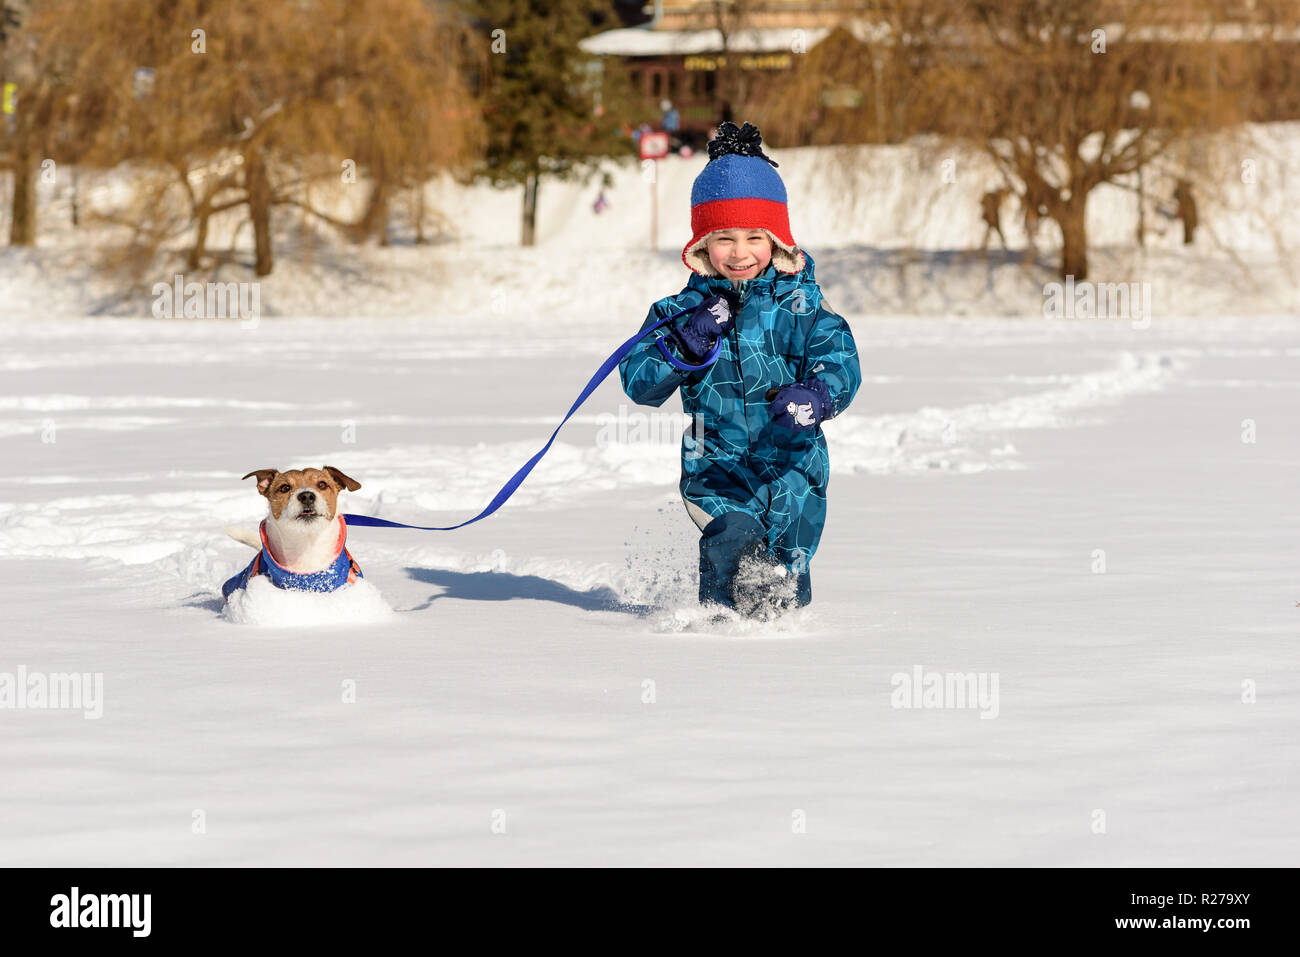 Happy kid avec chien en laisse intacte de jouer sur de la neige fraîche au jour d'hiver ensoleillé Banque D'Images